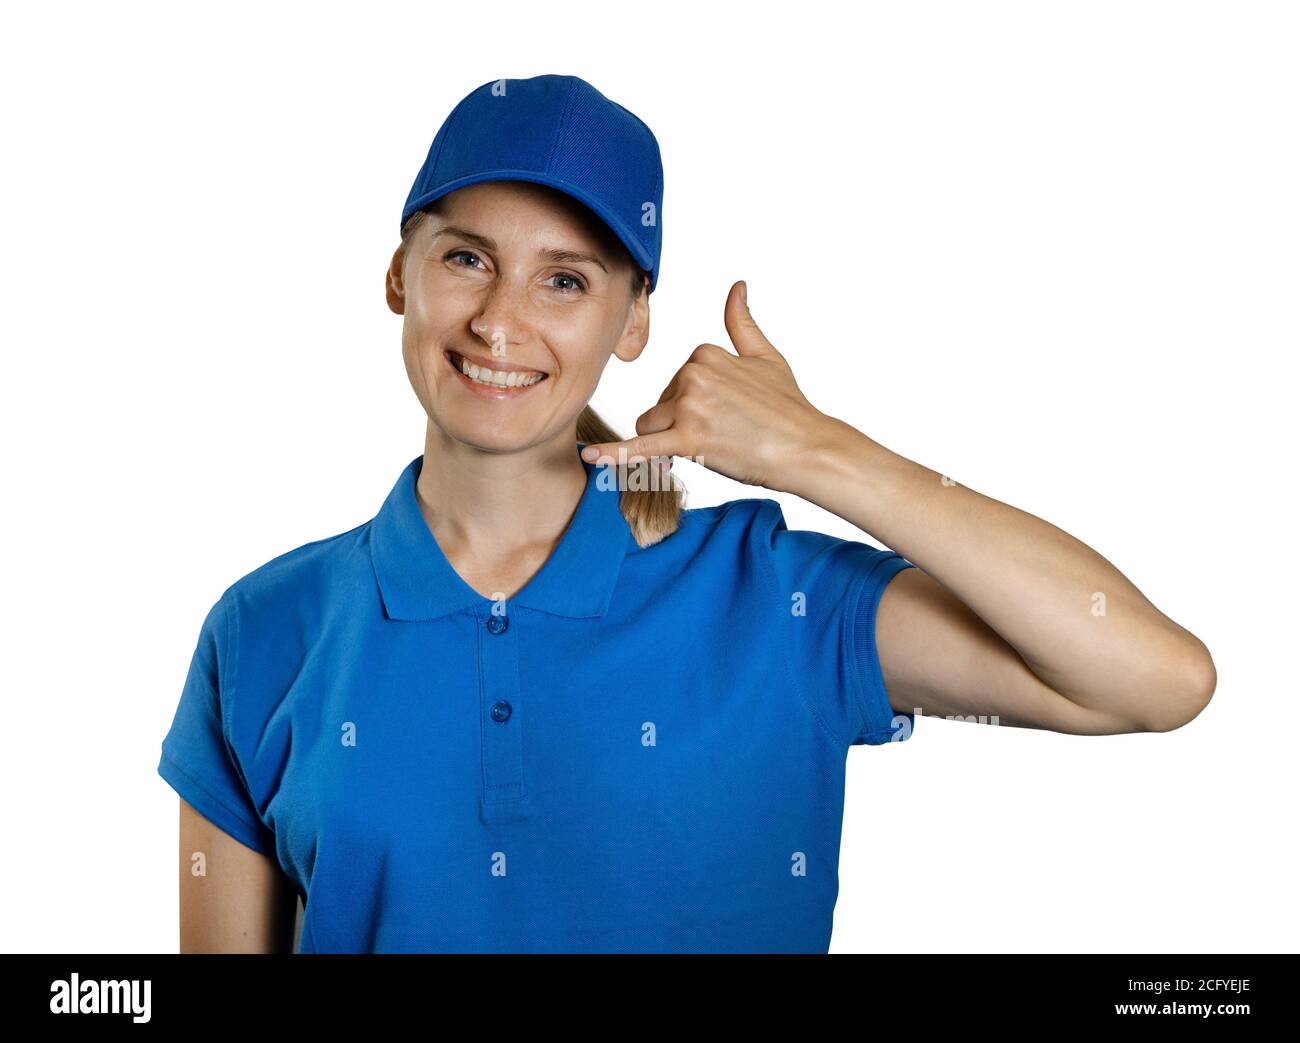 support service industry - giovane donna sorridente in uniforme blu che mostra il gesto di contatto della chiamata. isolato su sfondo bianco Foto Stock